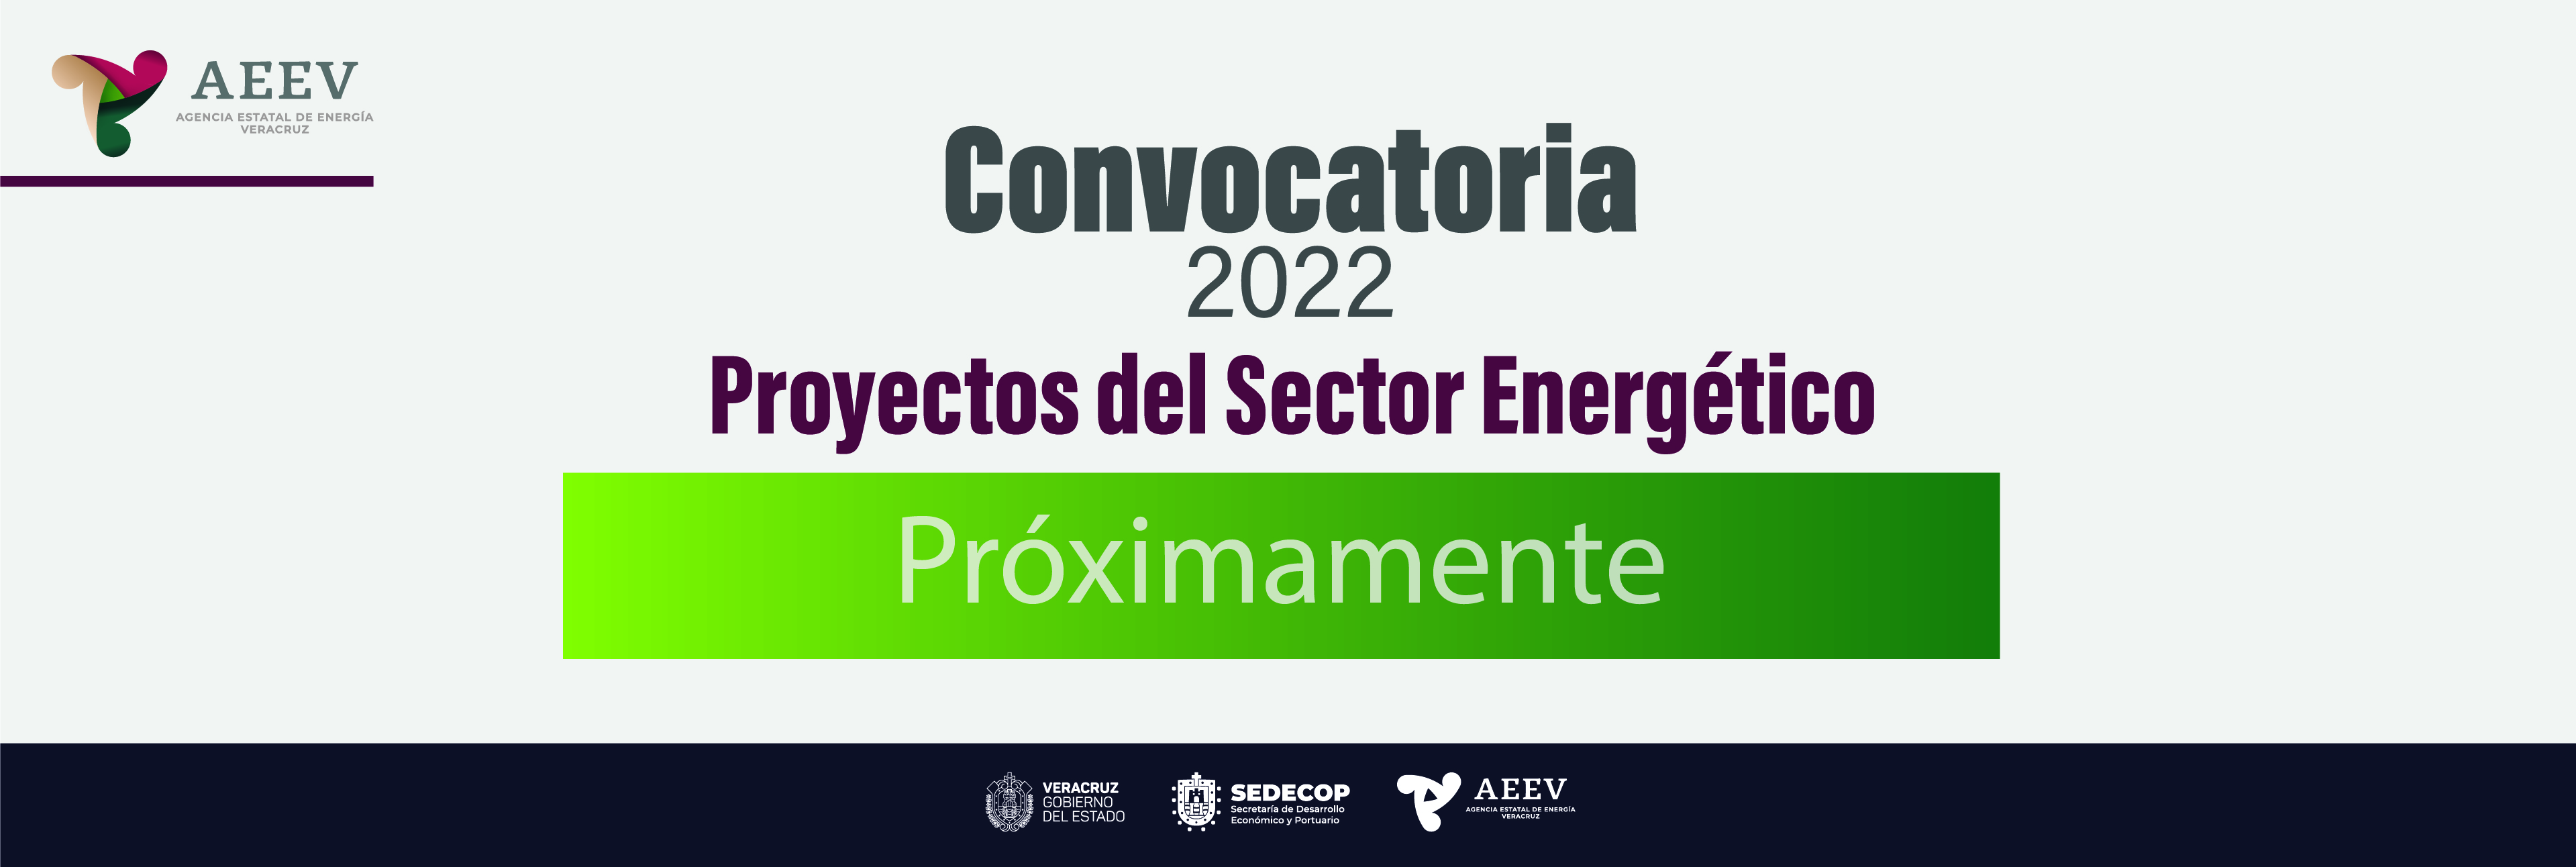 Convocatoria Proyectos 2022 - Contenido-06